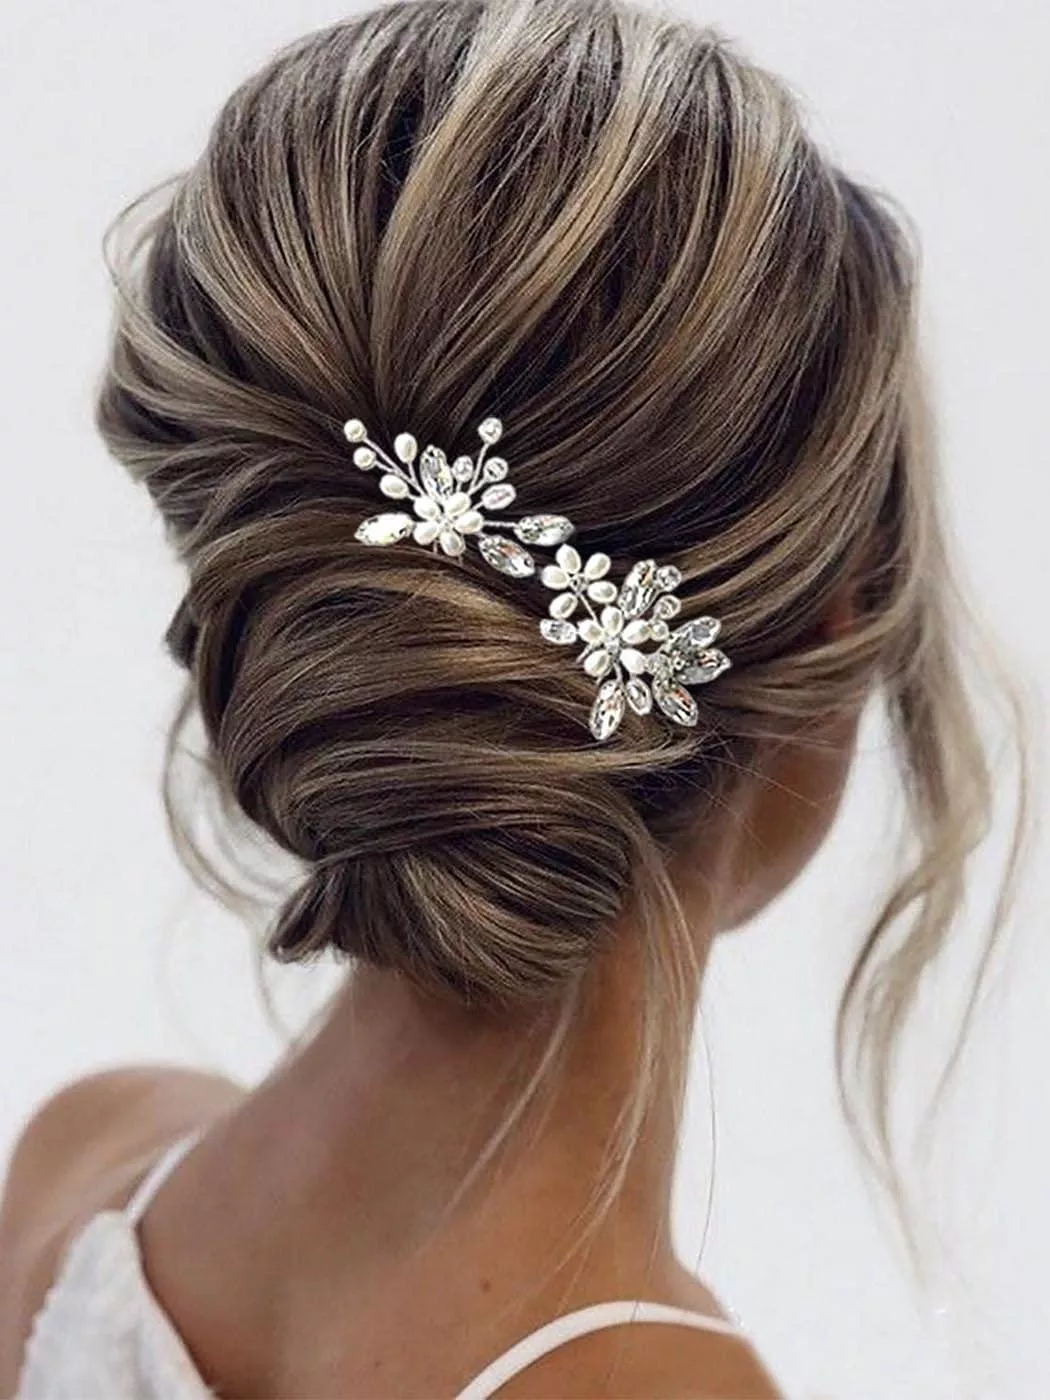 أجمل اكسسوارات شعر لعروس 2021: ابتاعي منها لتسريحة مميّزة يوم زفافكِ